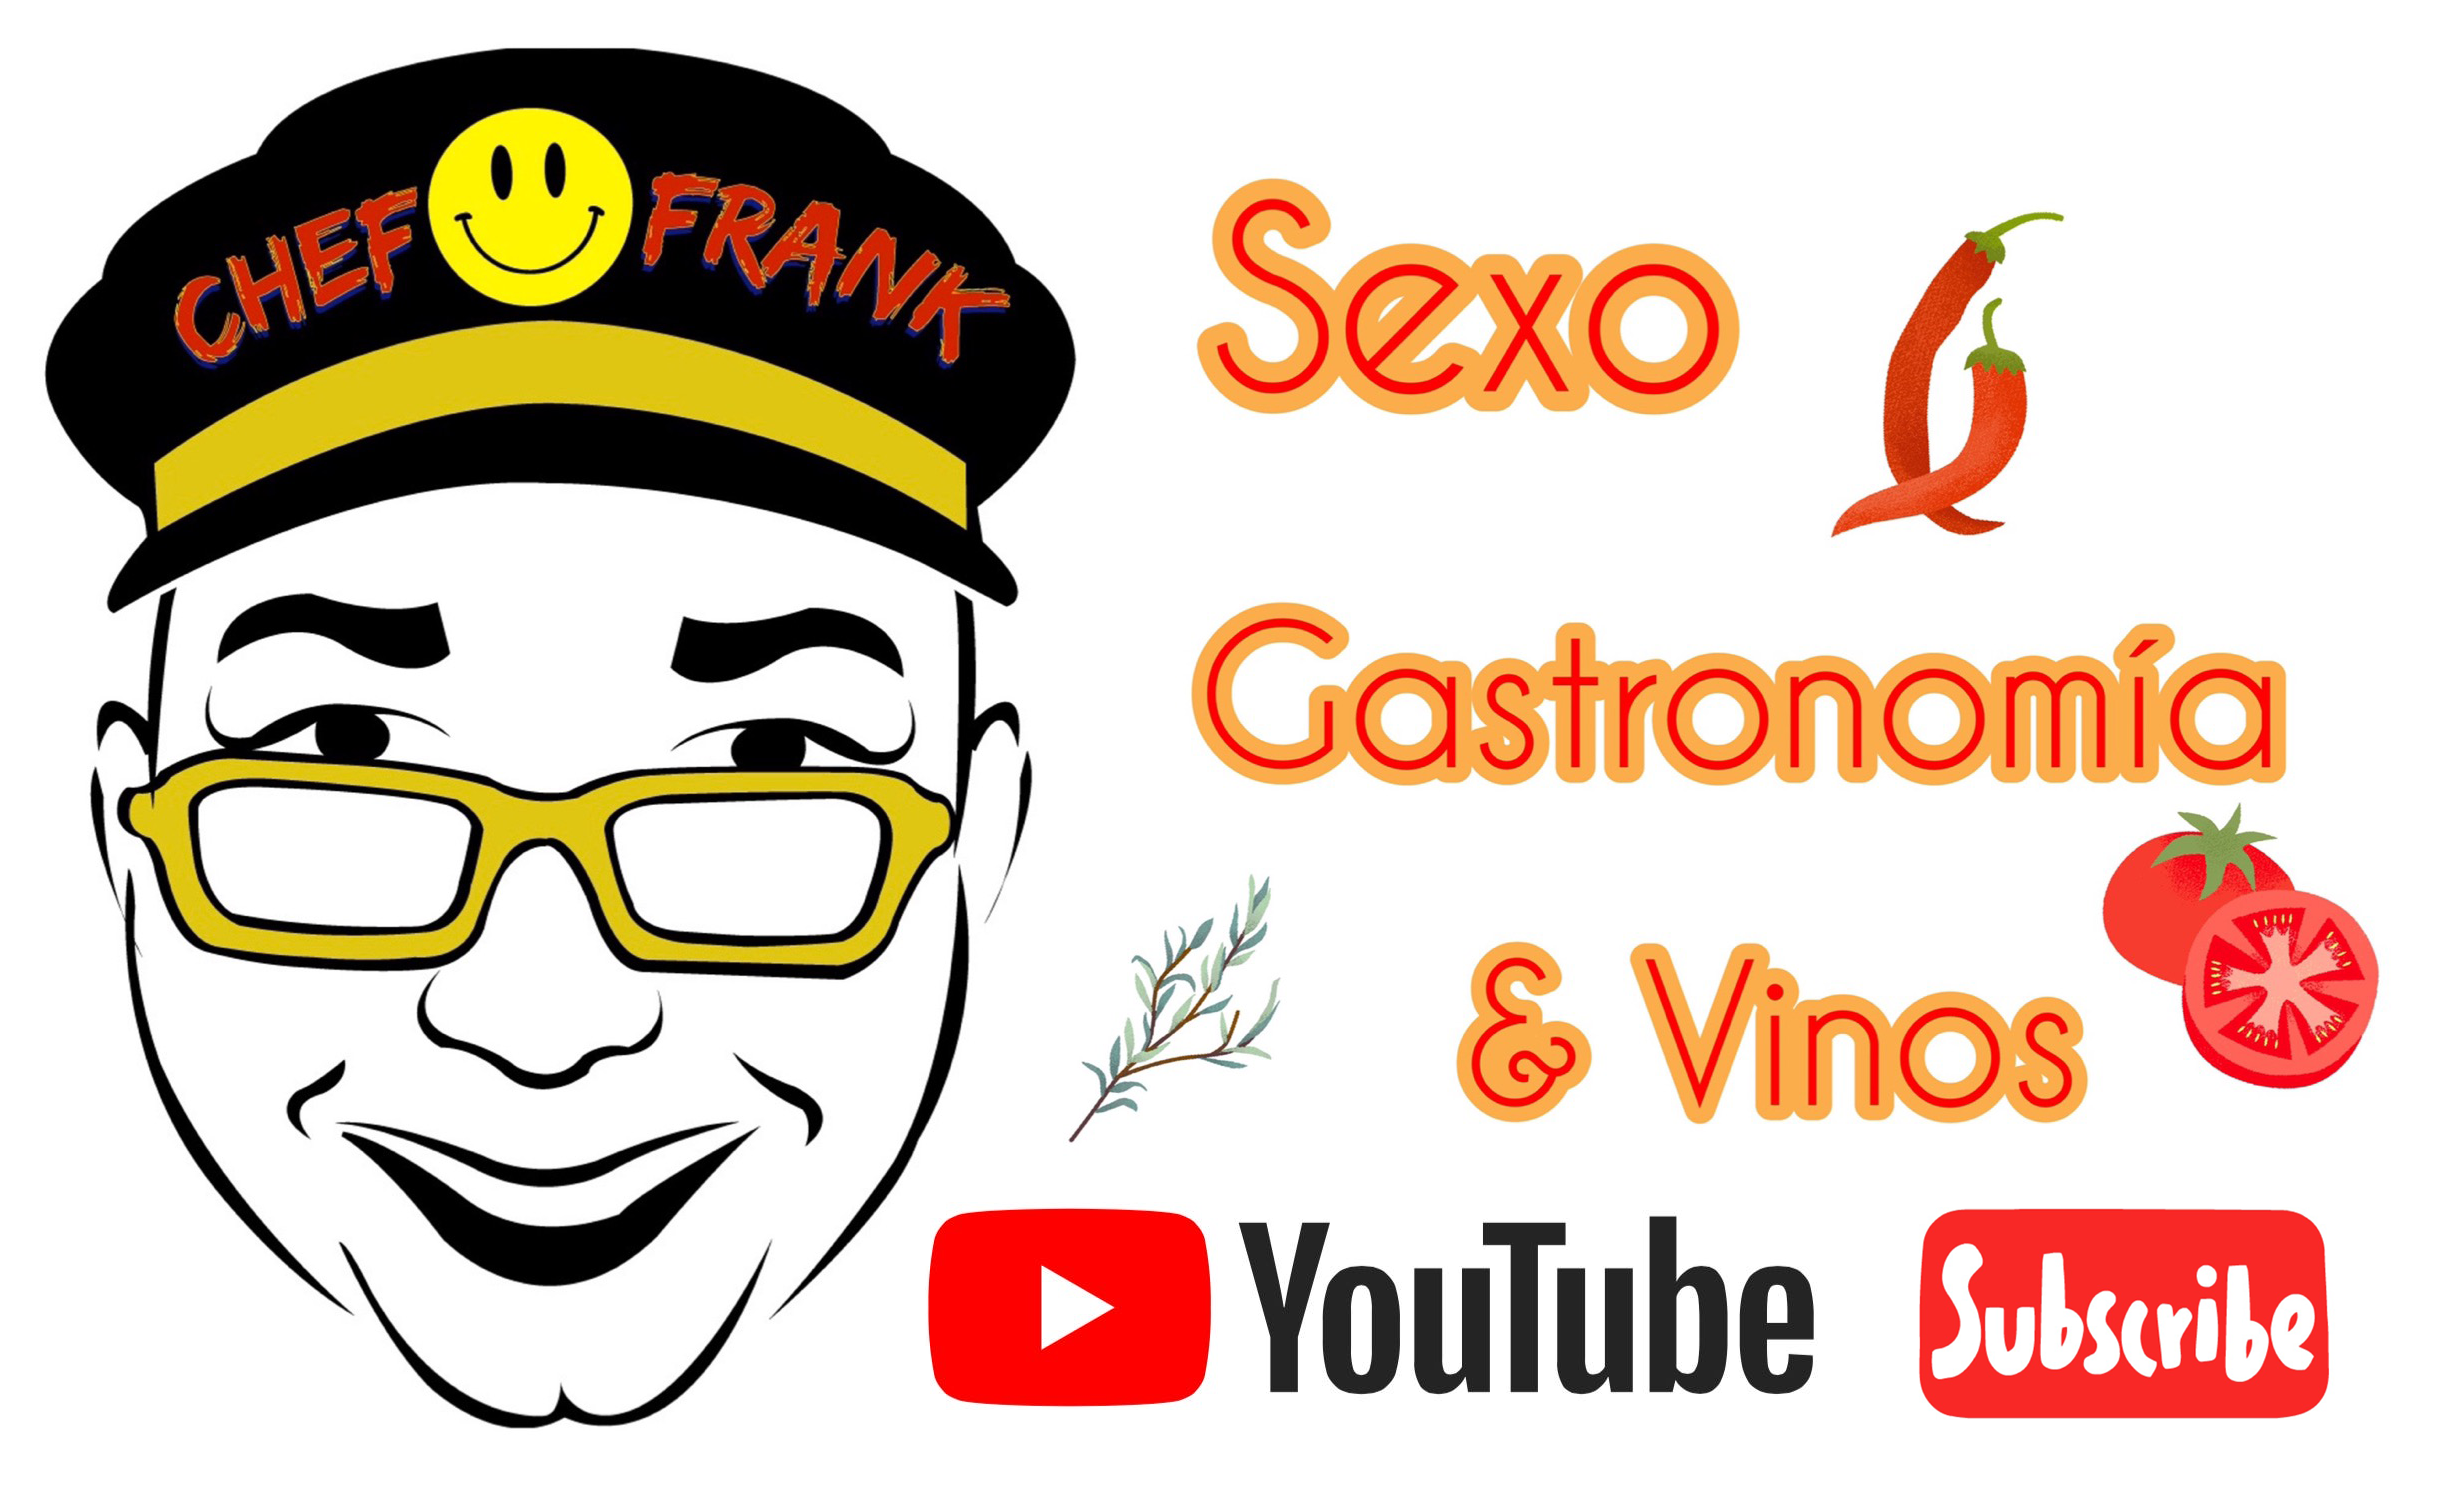 Sexo, Gastronomia & Vinos • Chef Frank Maldonado